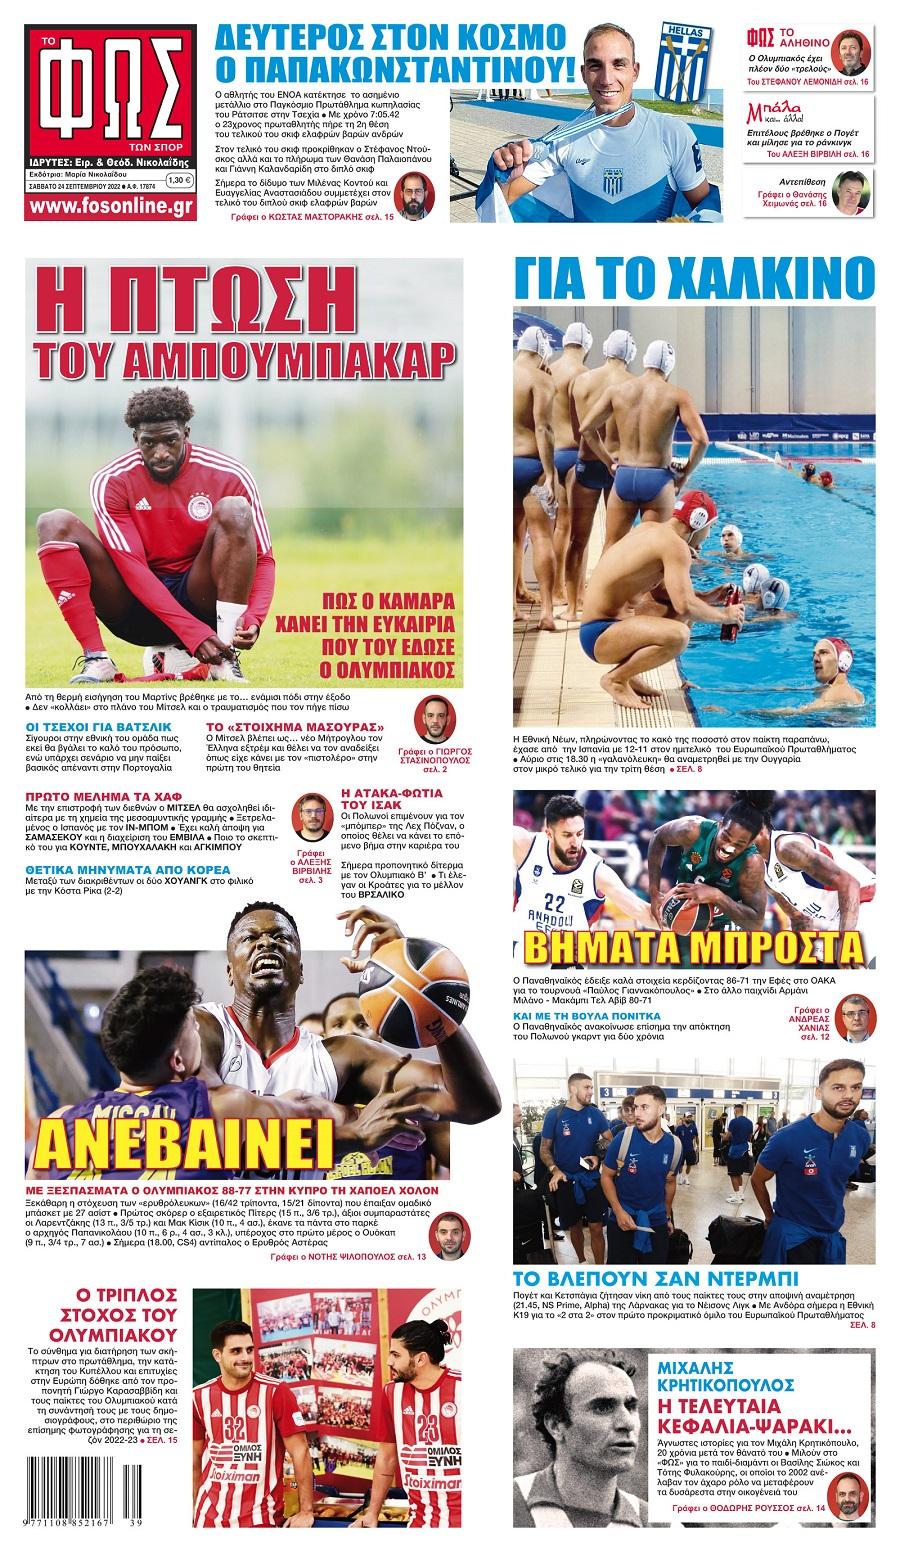 Πρωτοσέλιδα αθλητικών εφημερίδων για το Σάββατο 24 Σεπτεμβρίου 2022. Δείτε αναλυτικά τι αναφέρουν στη… βιτρίνα τους οι εφημερίδες.